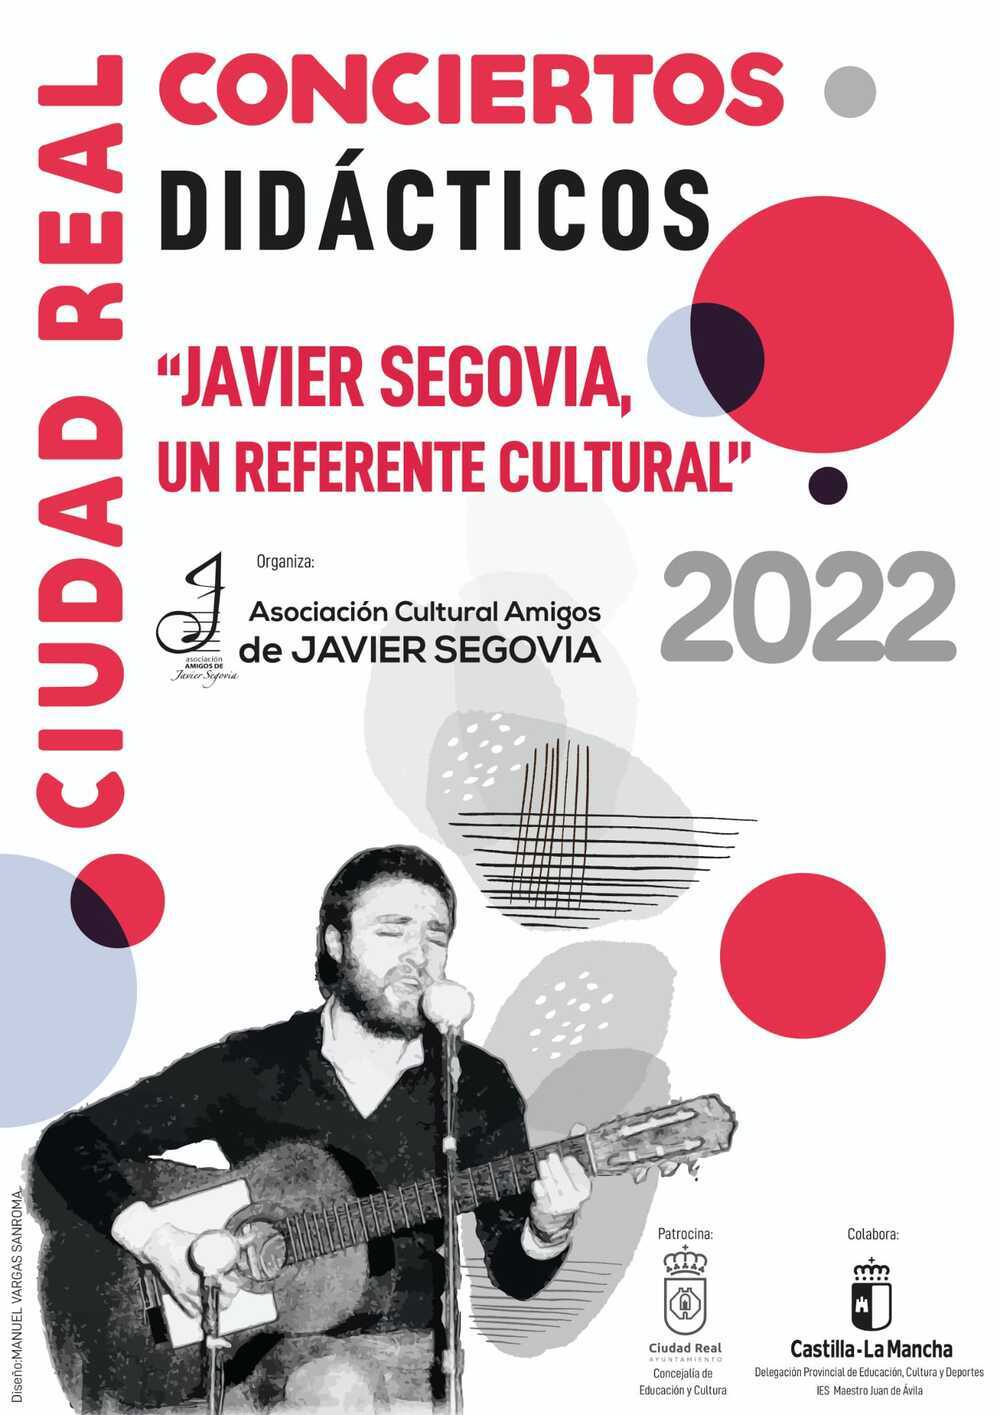 Ciudad Real recuerda a Javier Segovia en conciertos didácticos